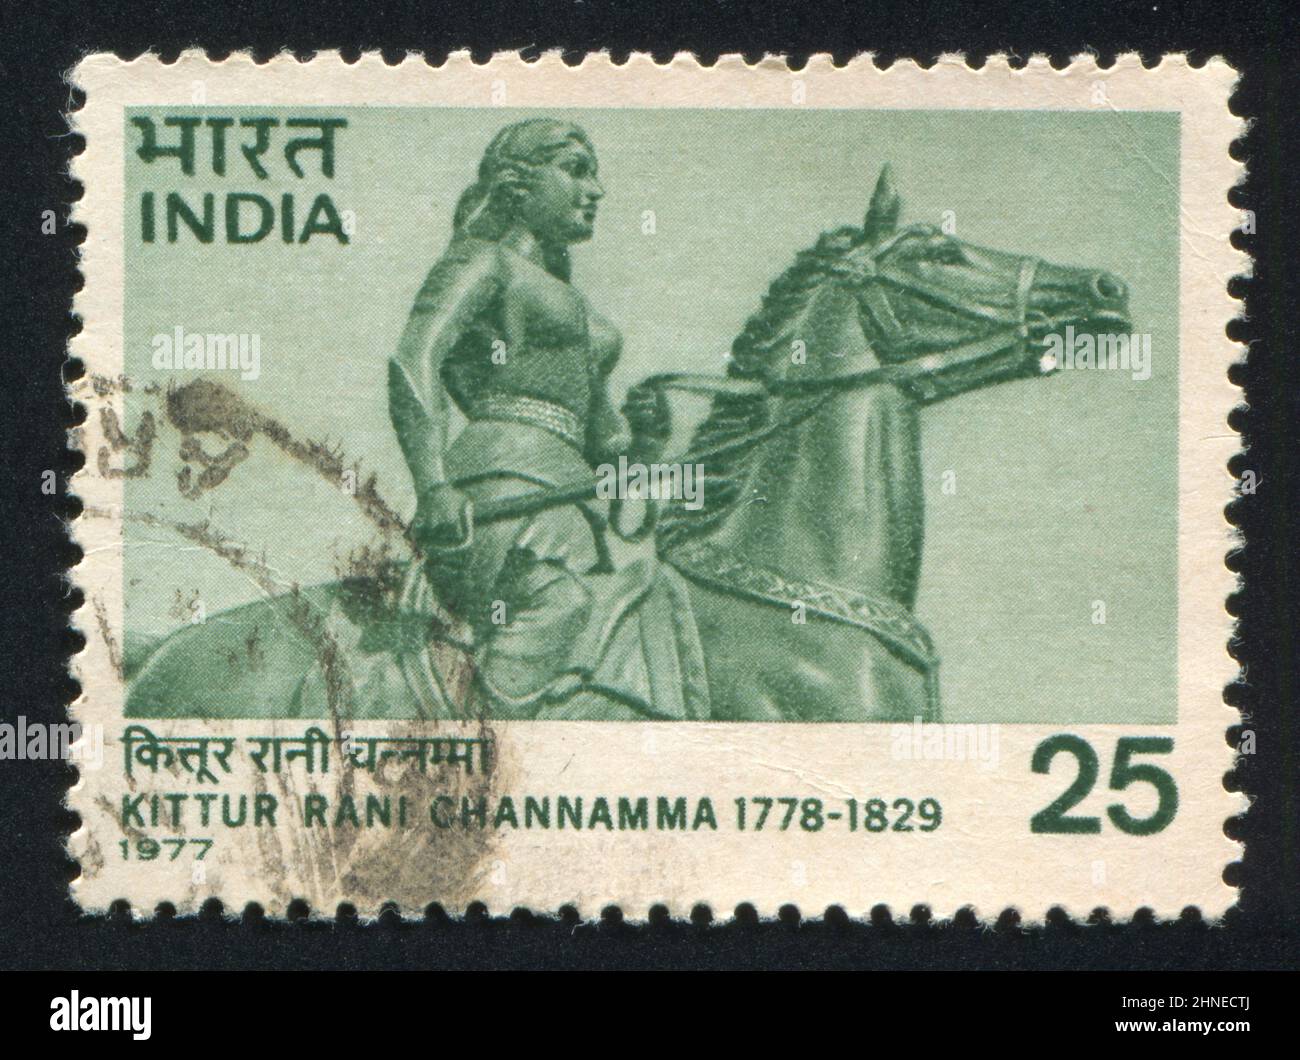 INDIEN - UM 1977: Briefmarke gedruckt von Indien, zeigt Statue von Rani Channamma, um 1977 Stockfoto